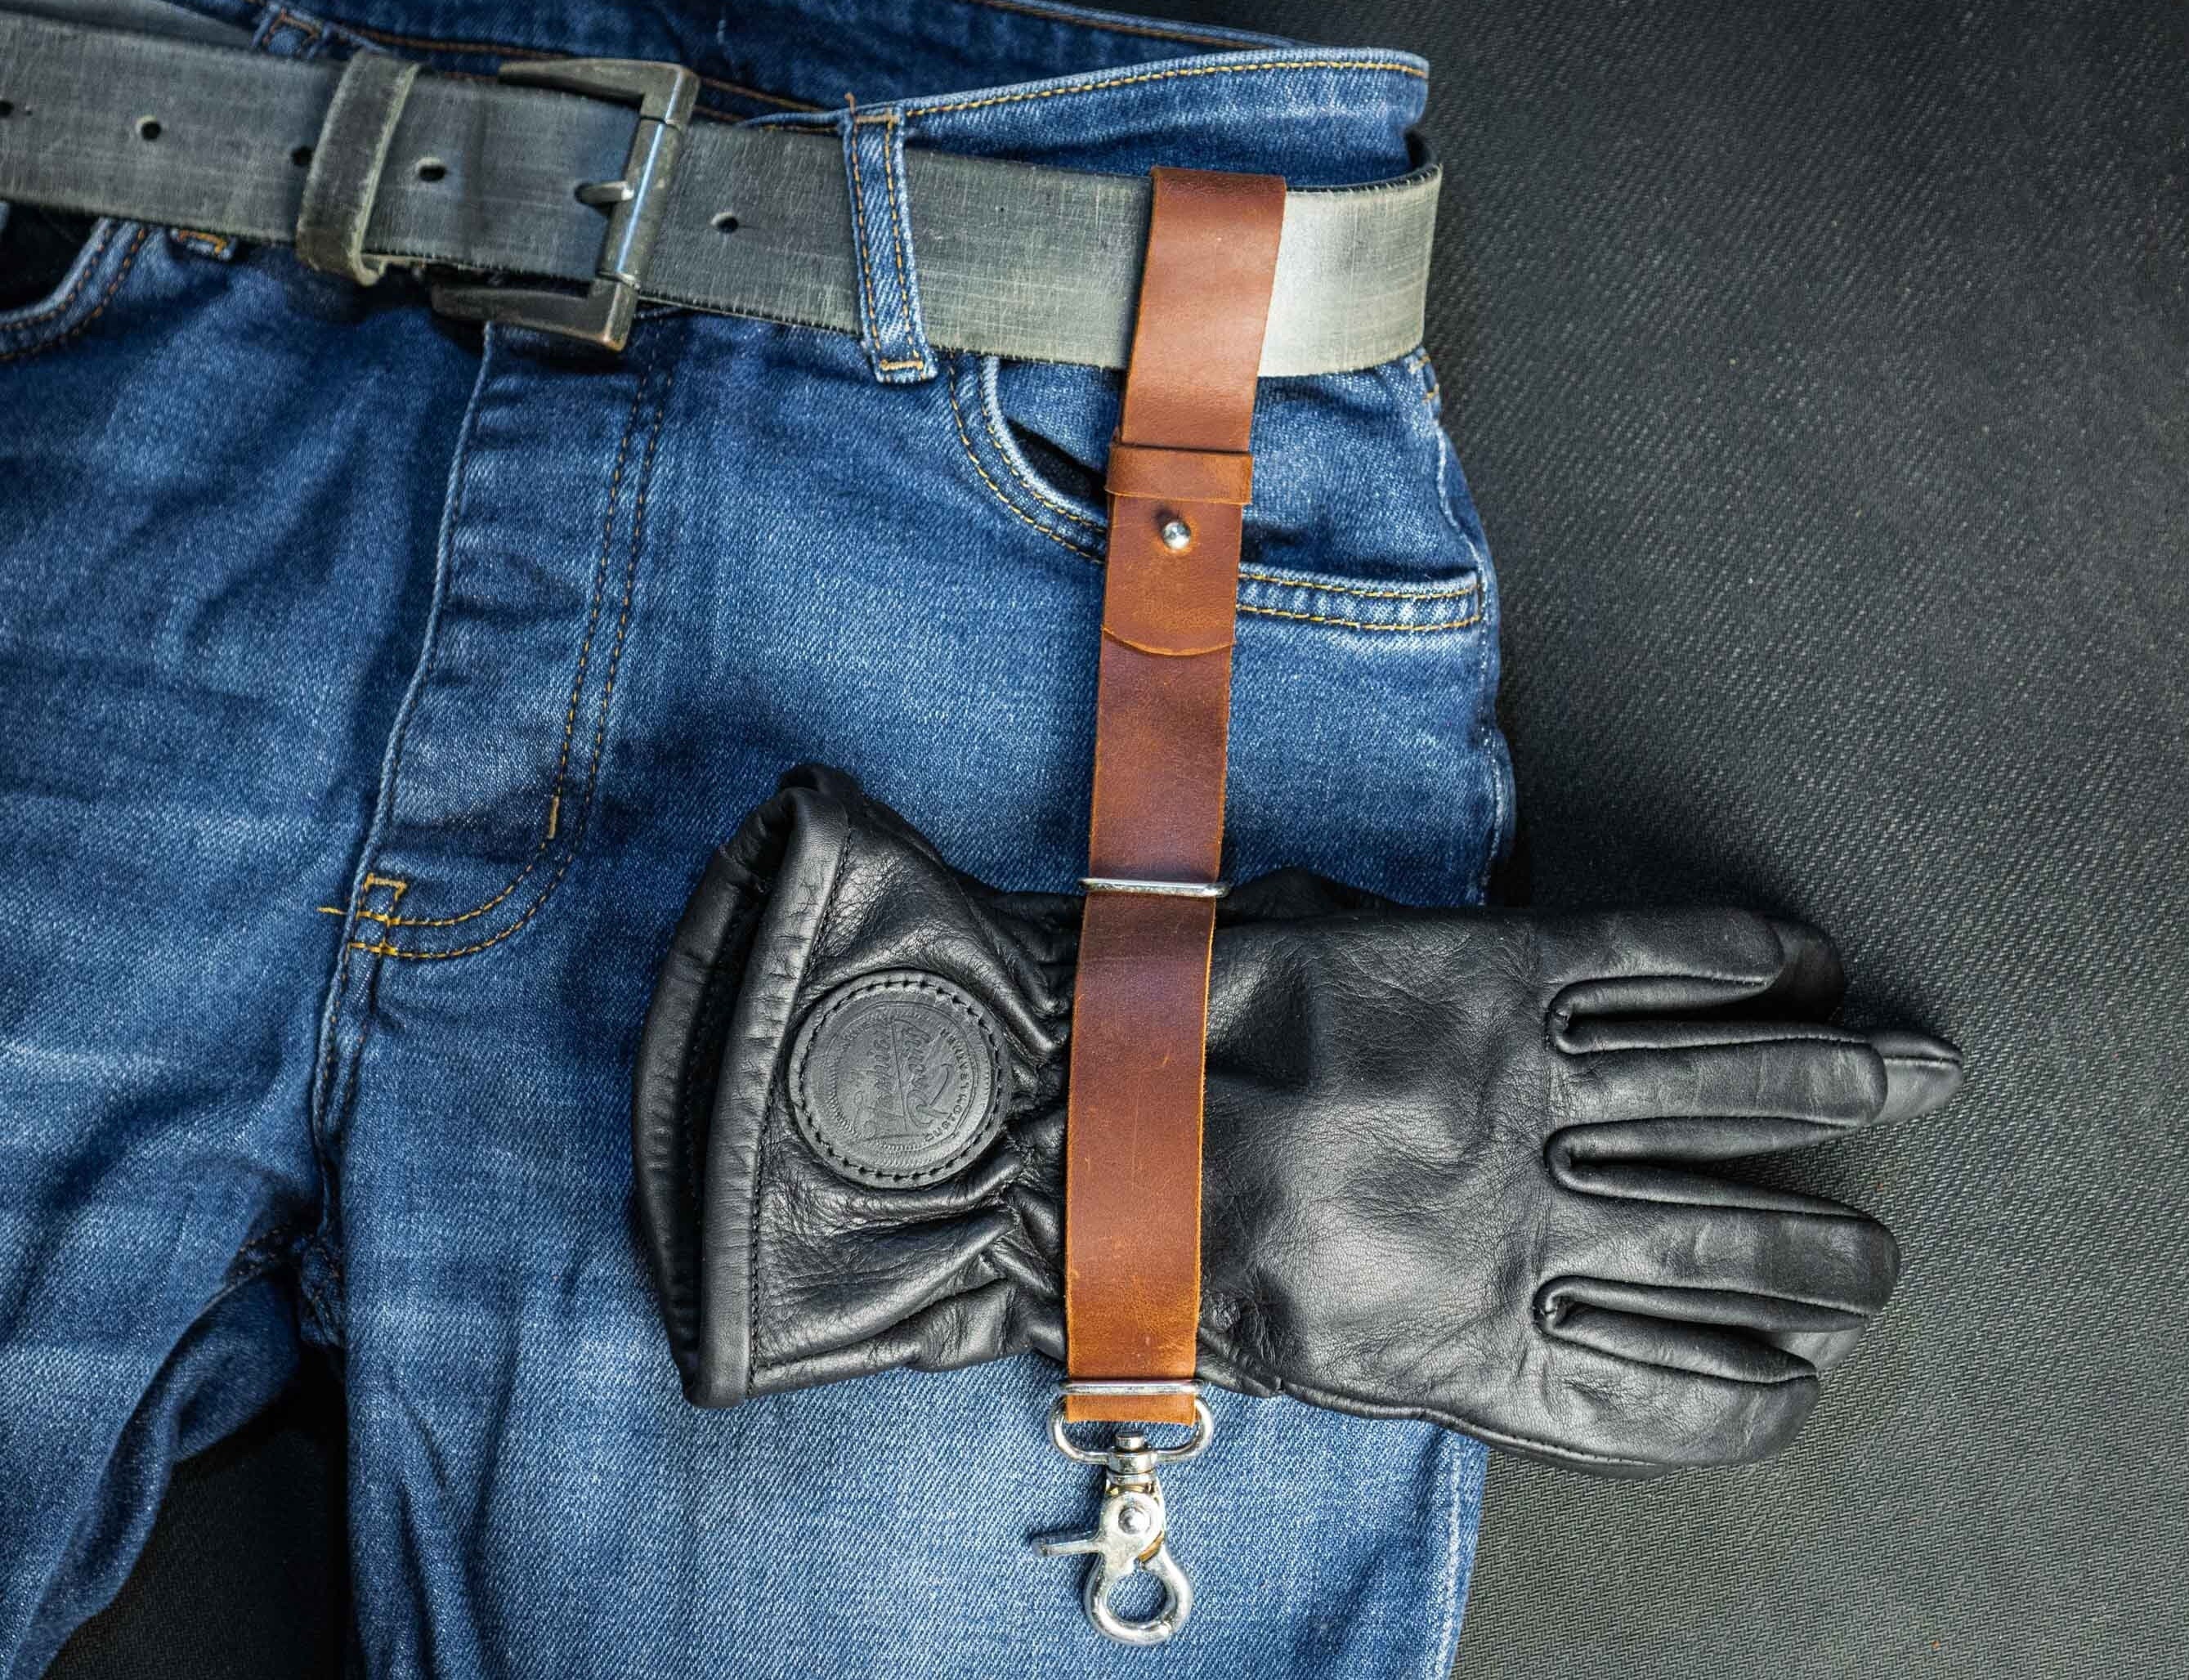 Attache ceinture porte outils en cuir pour pompier